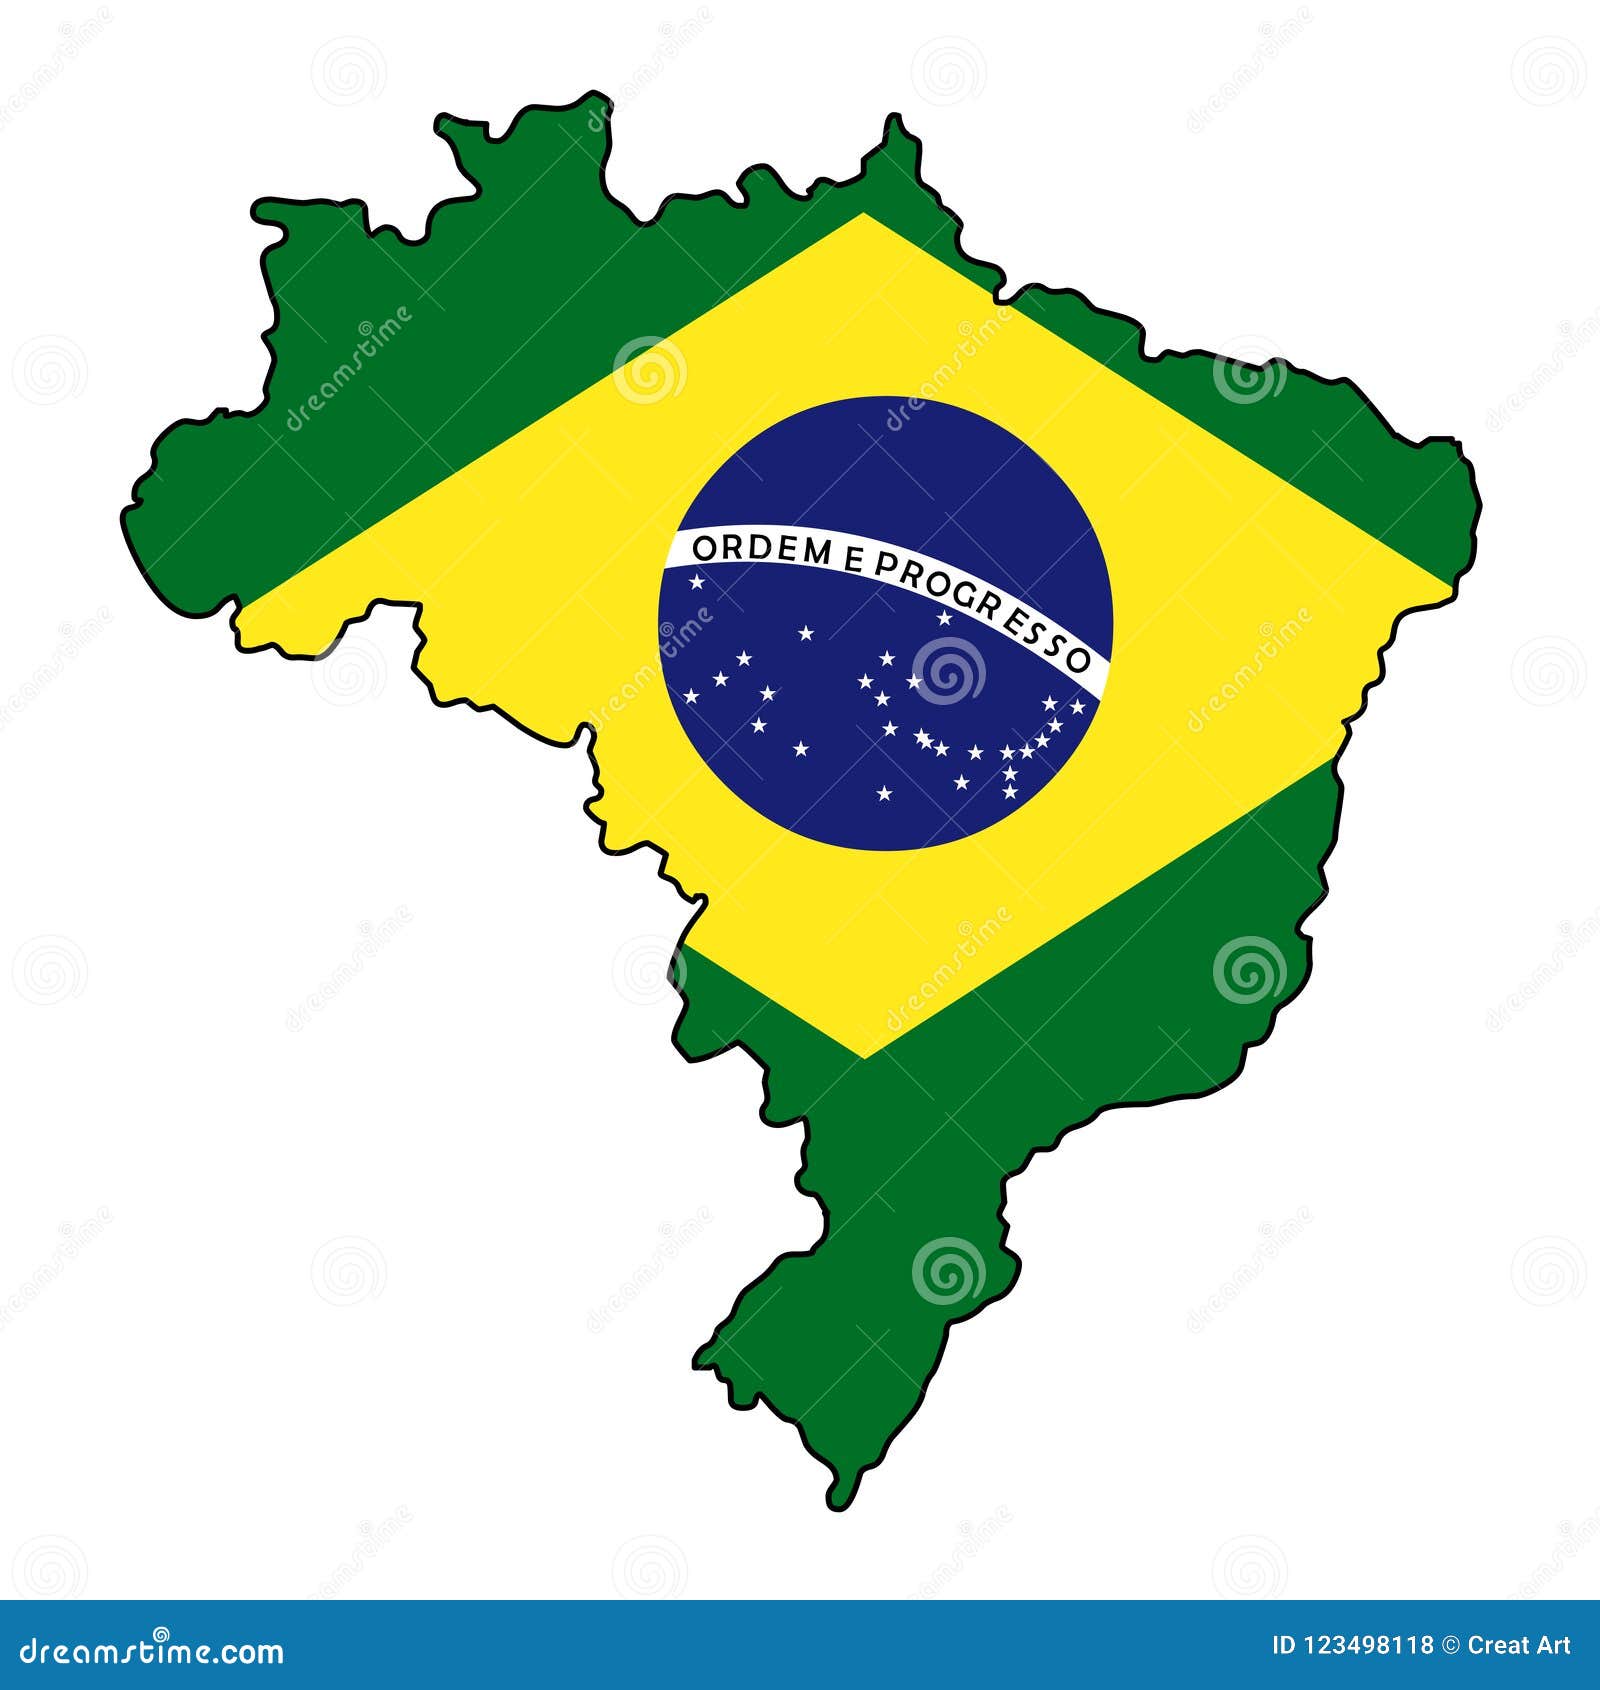 Brasil or brazil